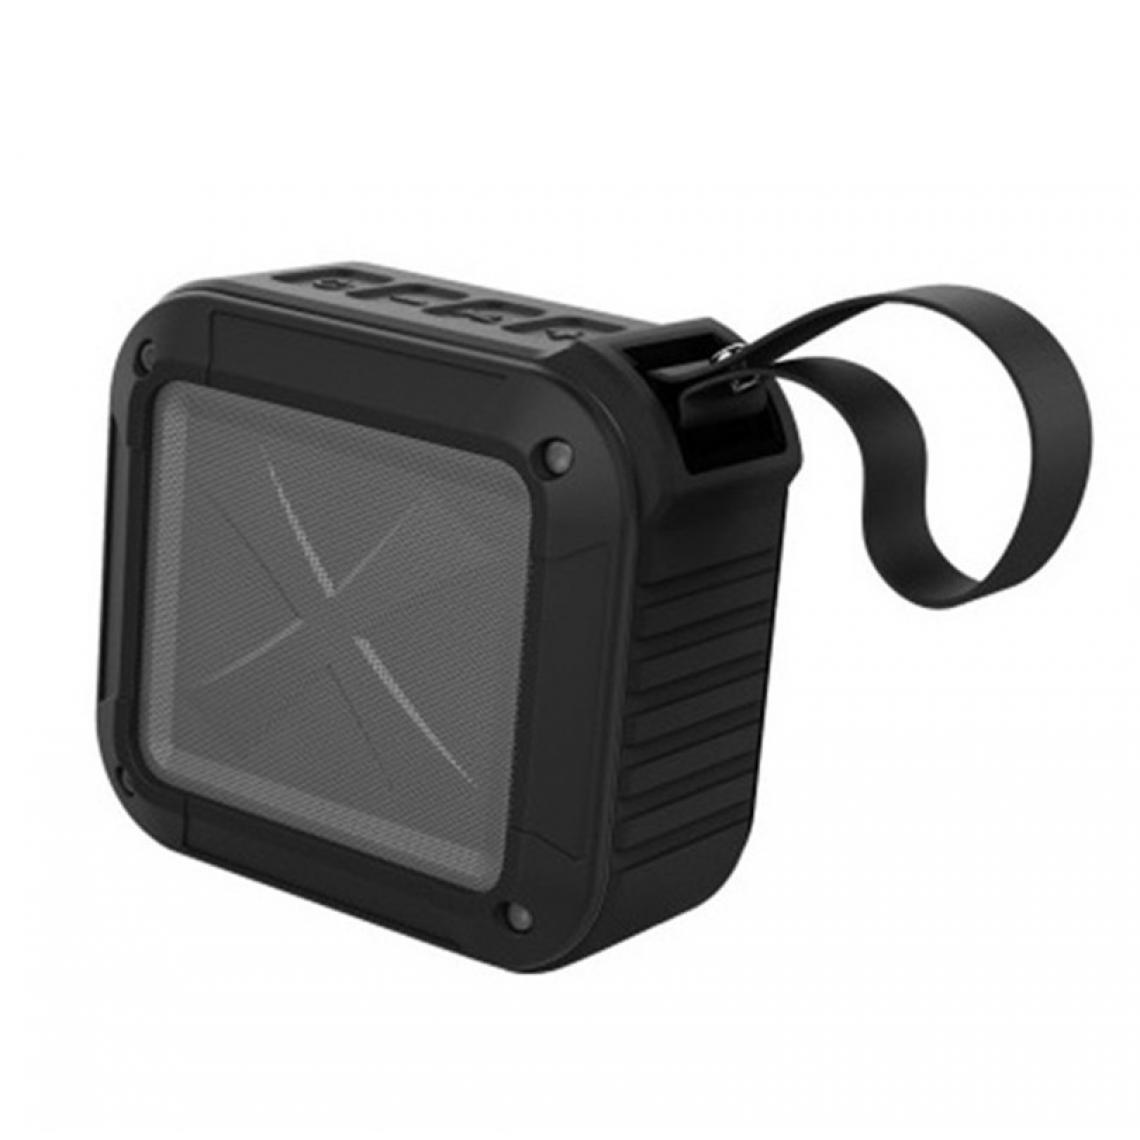 Wewoo - Enceinte Bluetooth étanche Haut-parleur sans fil S7 Mini avec vélo TF / FM / AUX / NFC noir - Enceinte PC